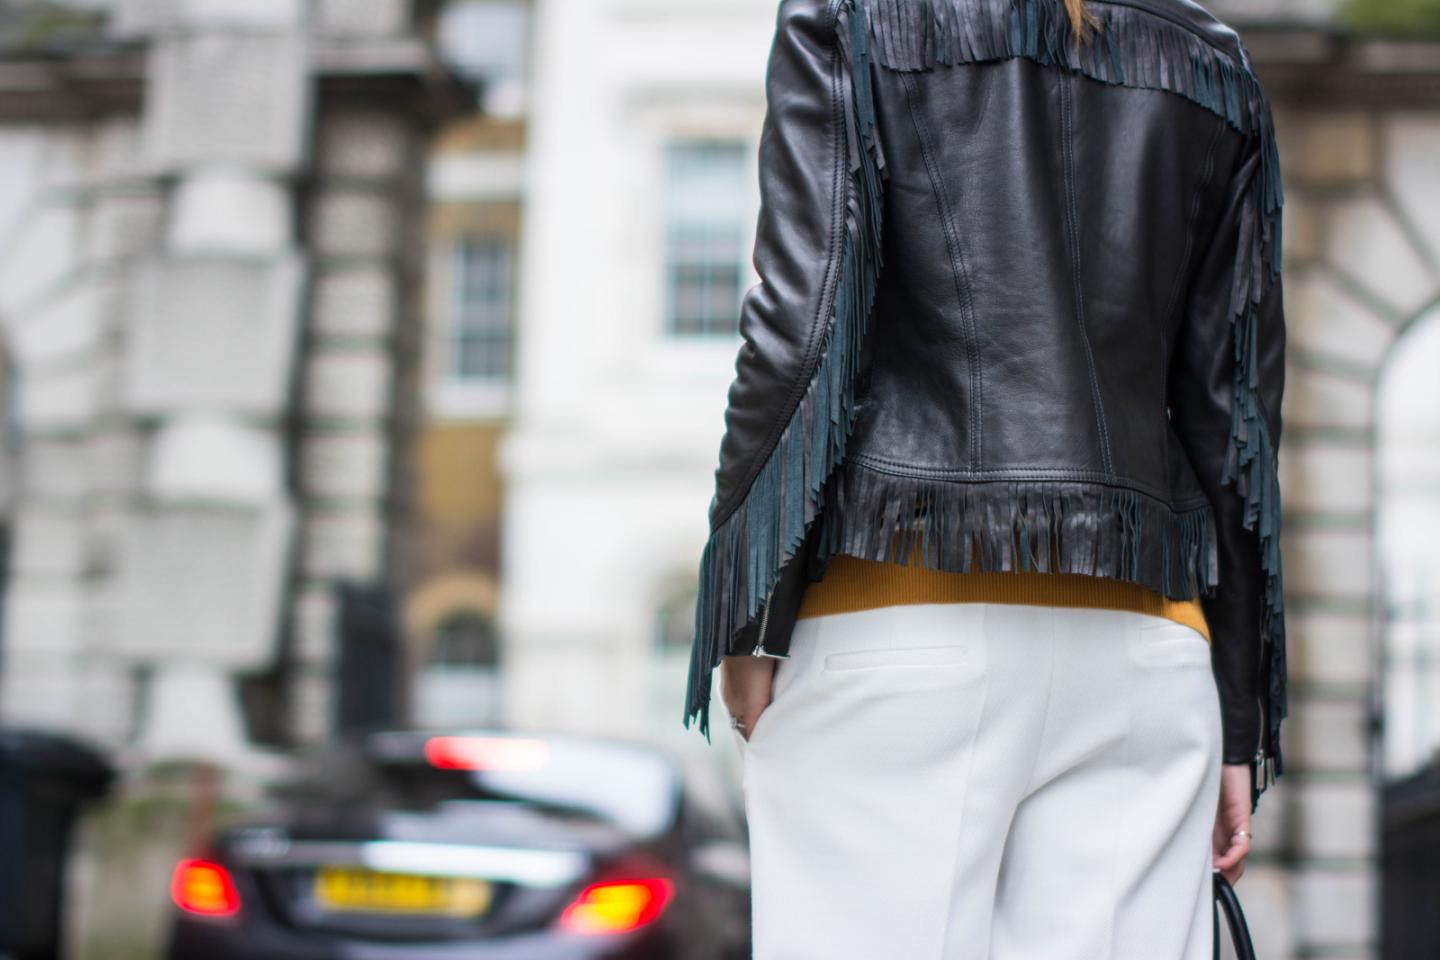 EJSTYLE - Emma Hill, London Fashion Week, AW15 LFW, Street style, LFW, Karen millen fringe leather jacket, Chloe trousers, white wide leg trousers, OOTD